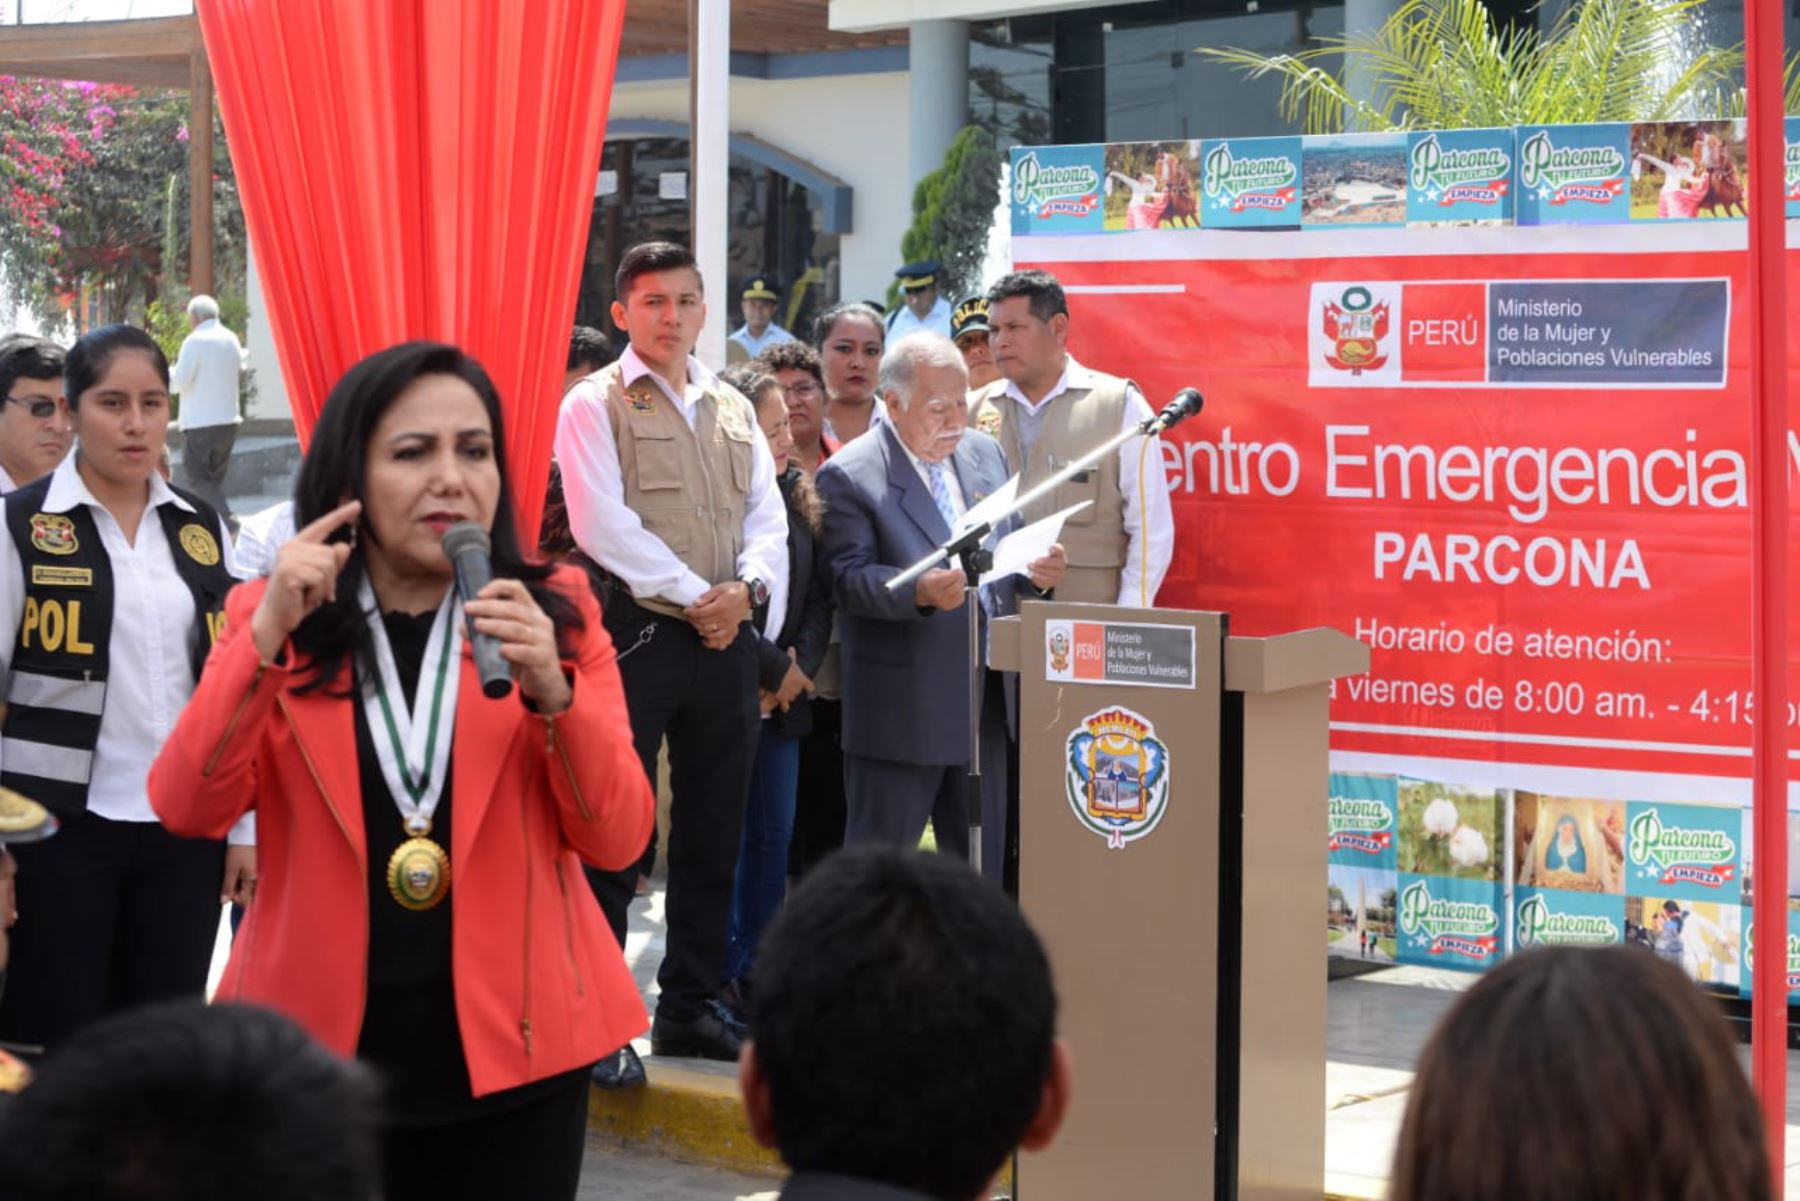 La ministra de la Mujer y Poblaciones Vulnerables, Gloria Montenegro, inauguró hoy el Centro Emergencia Mujer del distrito de Parcona, en la región Ica.